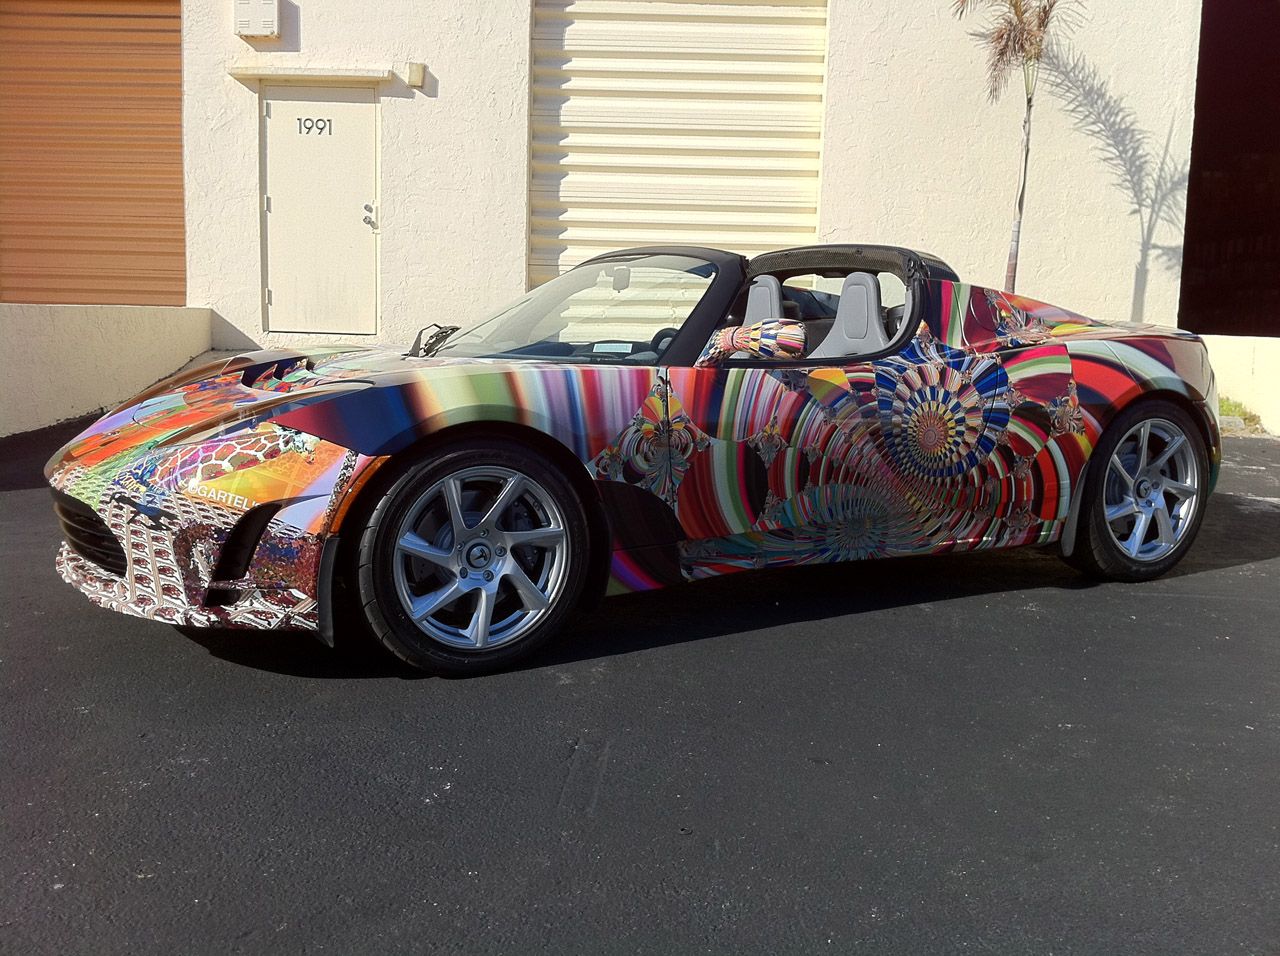 2011 Tesla Roadster Art Car by Laurence Gartel